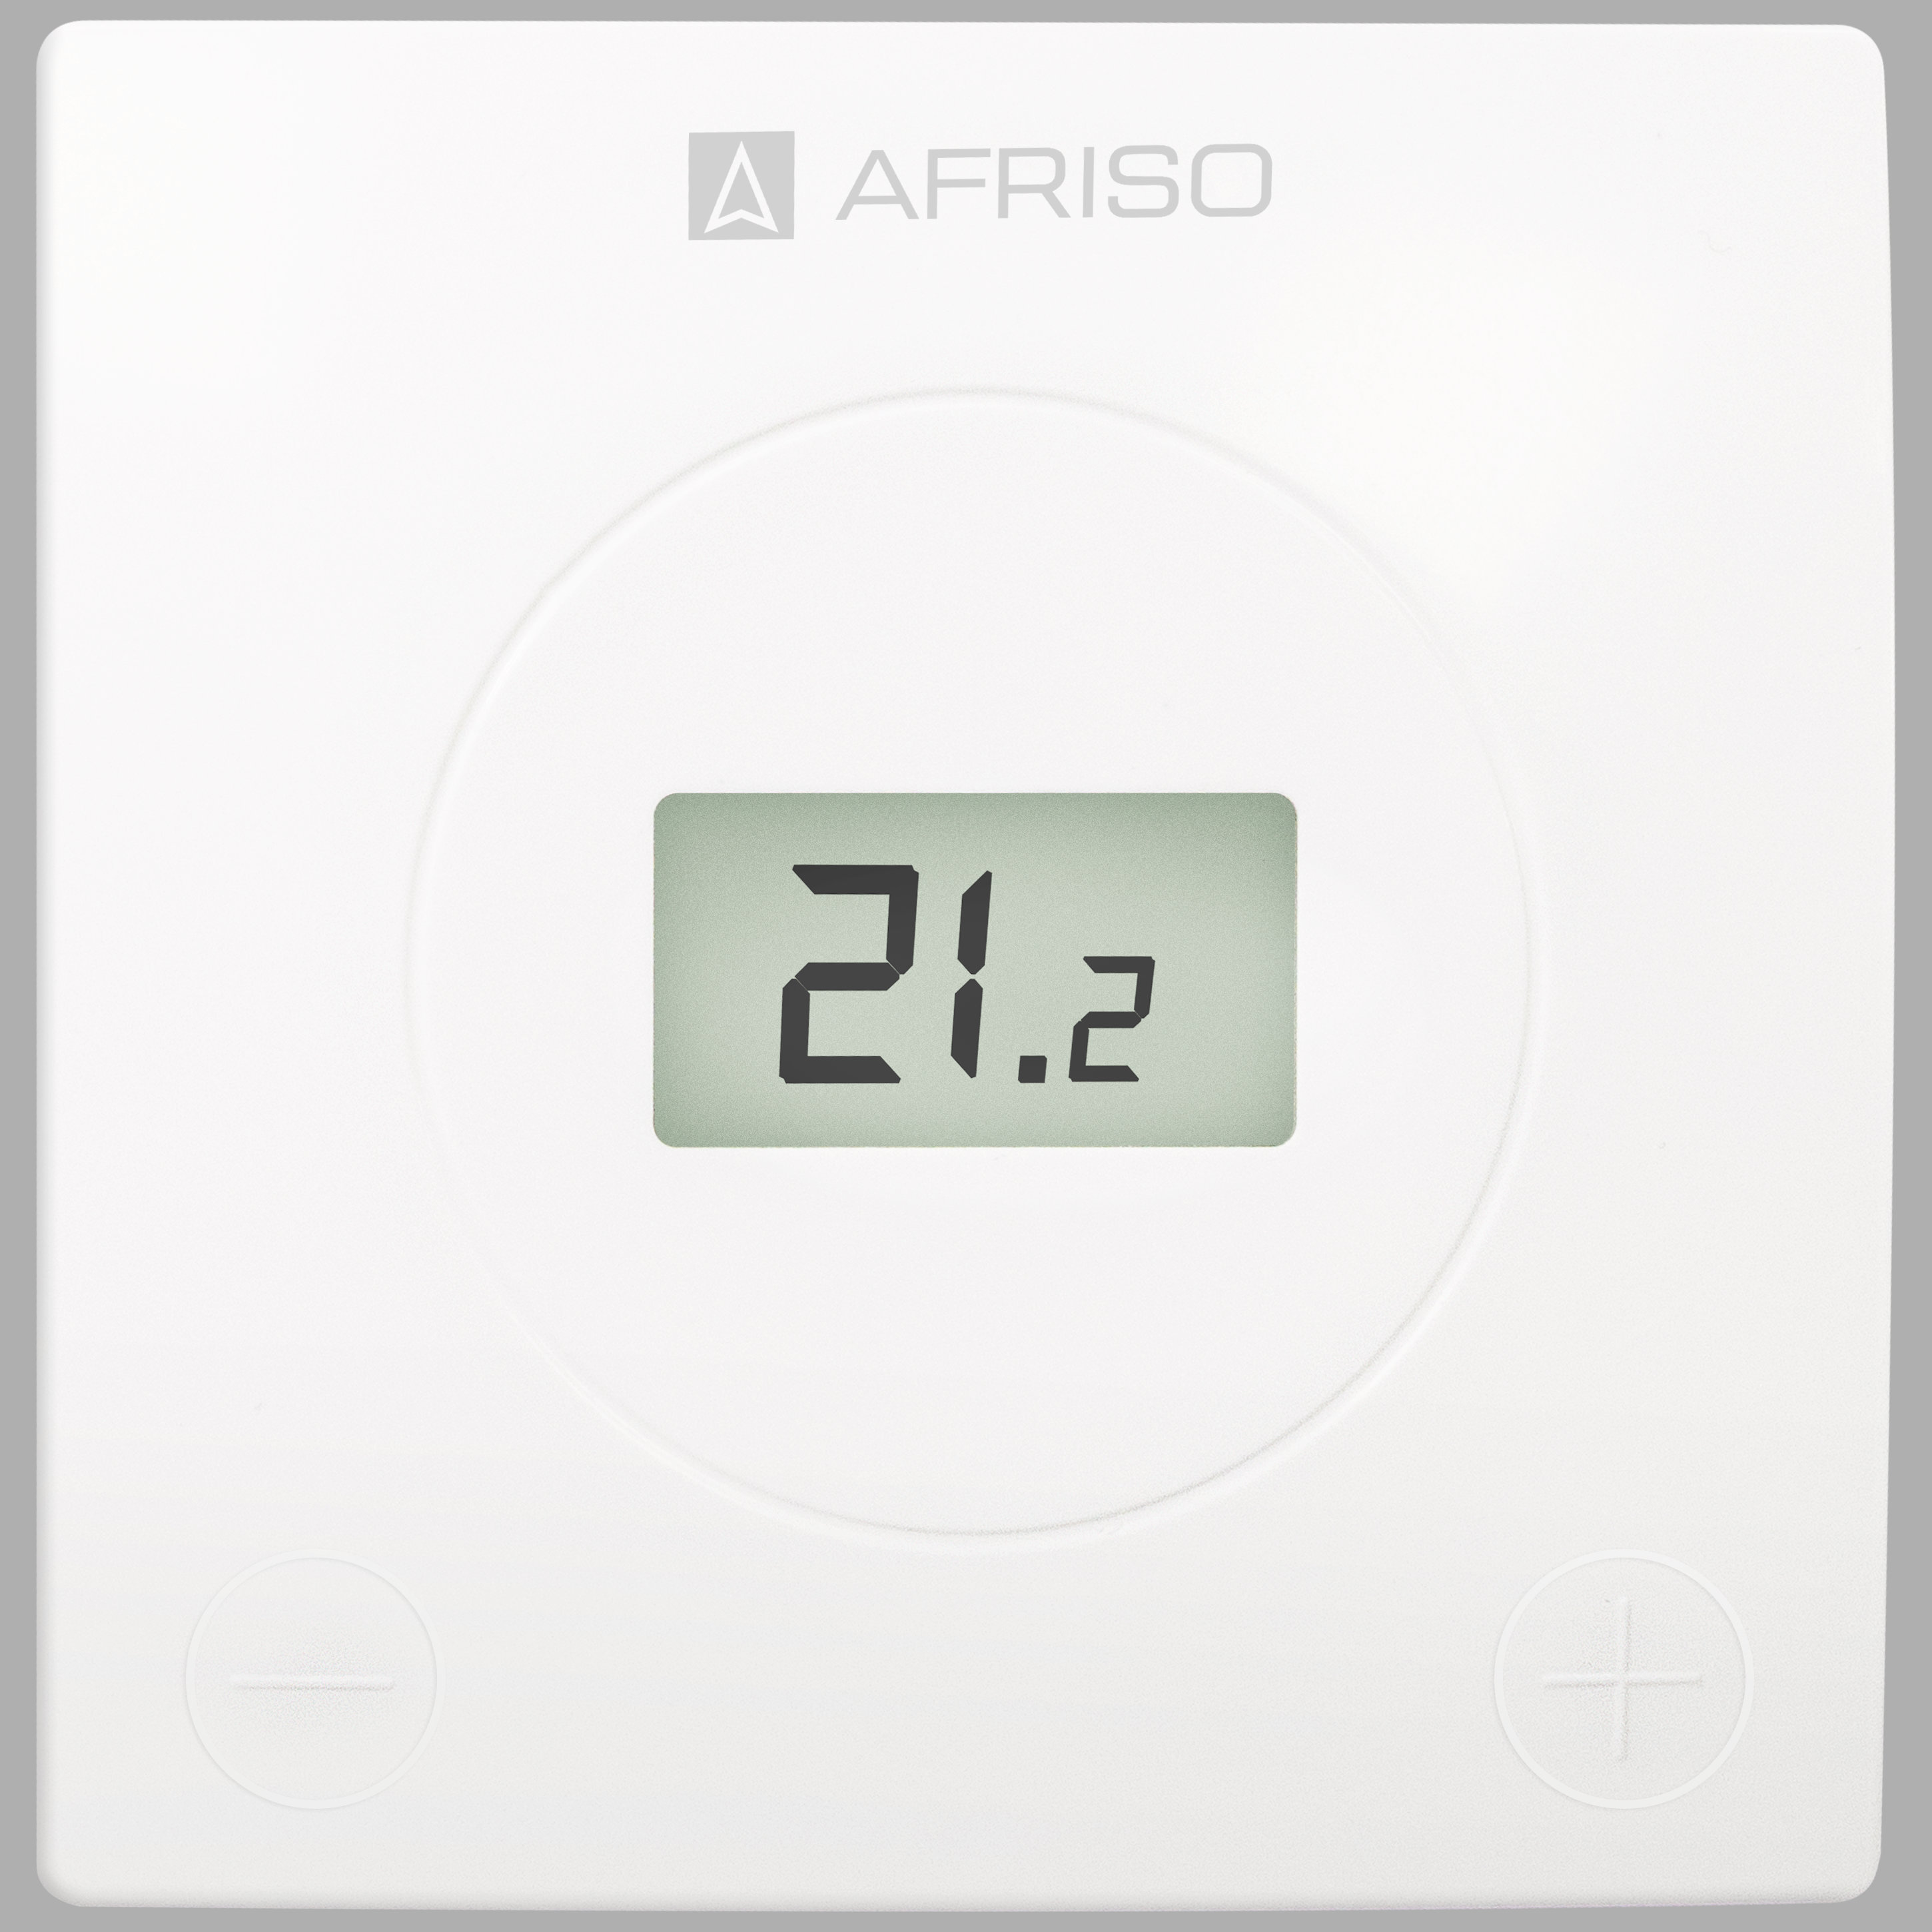 Thermostat d'ambiance digital programmable filaire FloorControl avec mesure  de température - Groupe Afriso